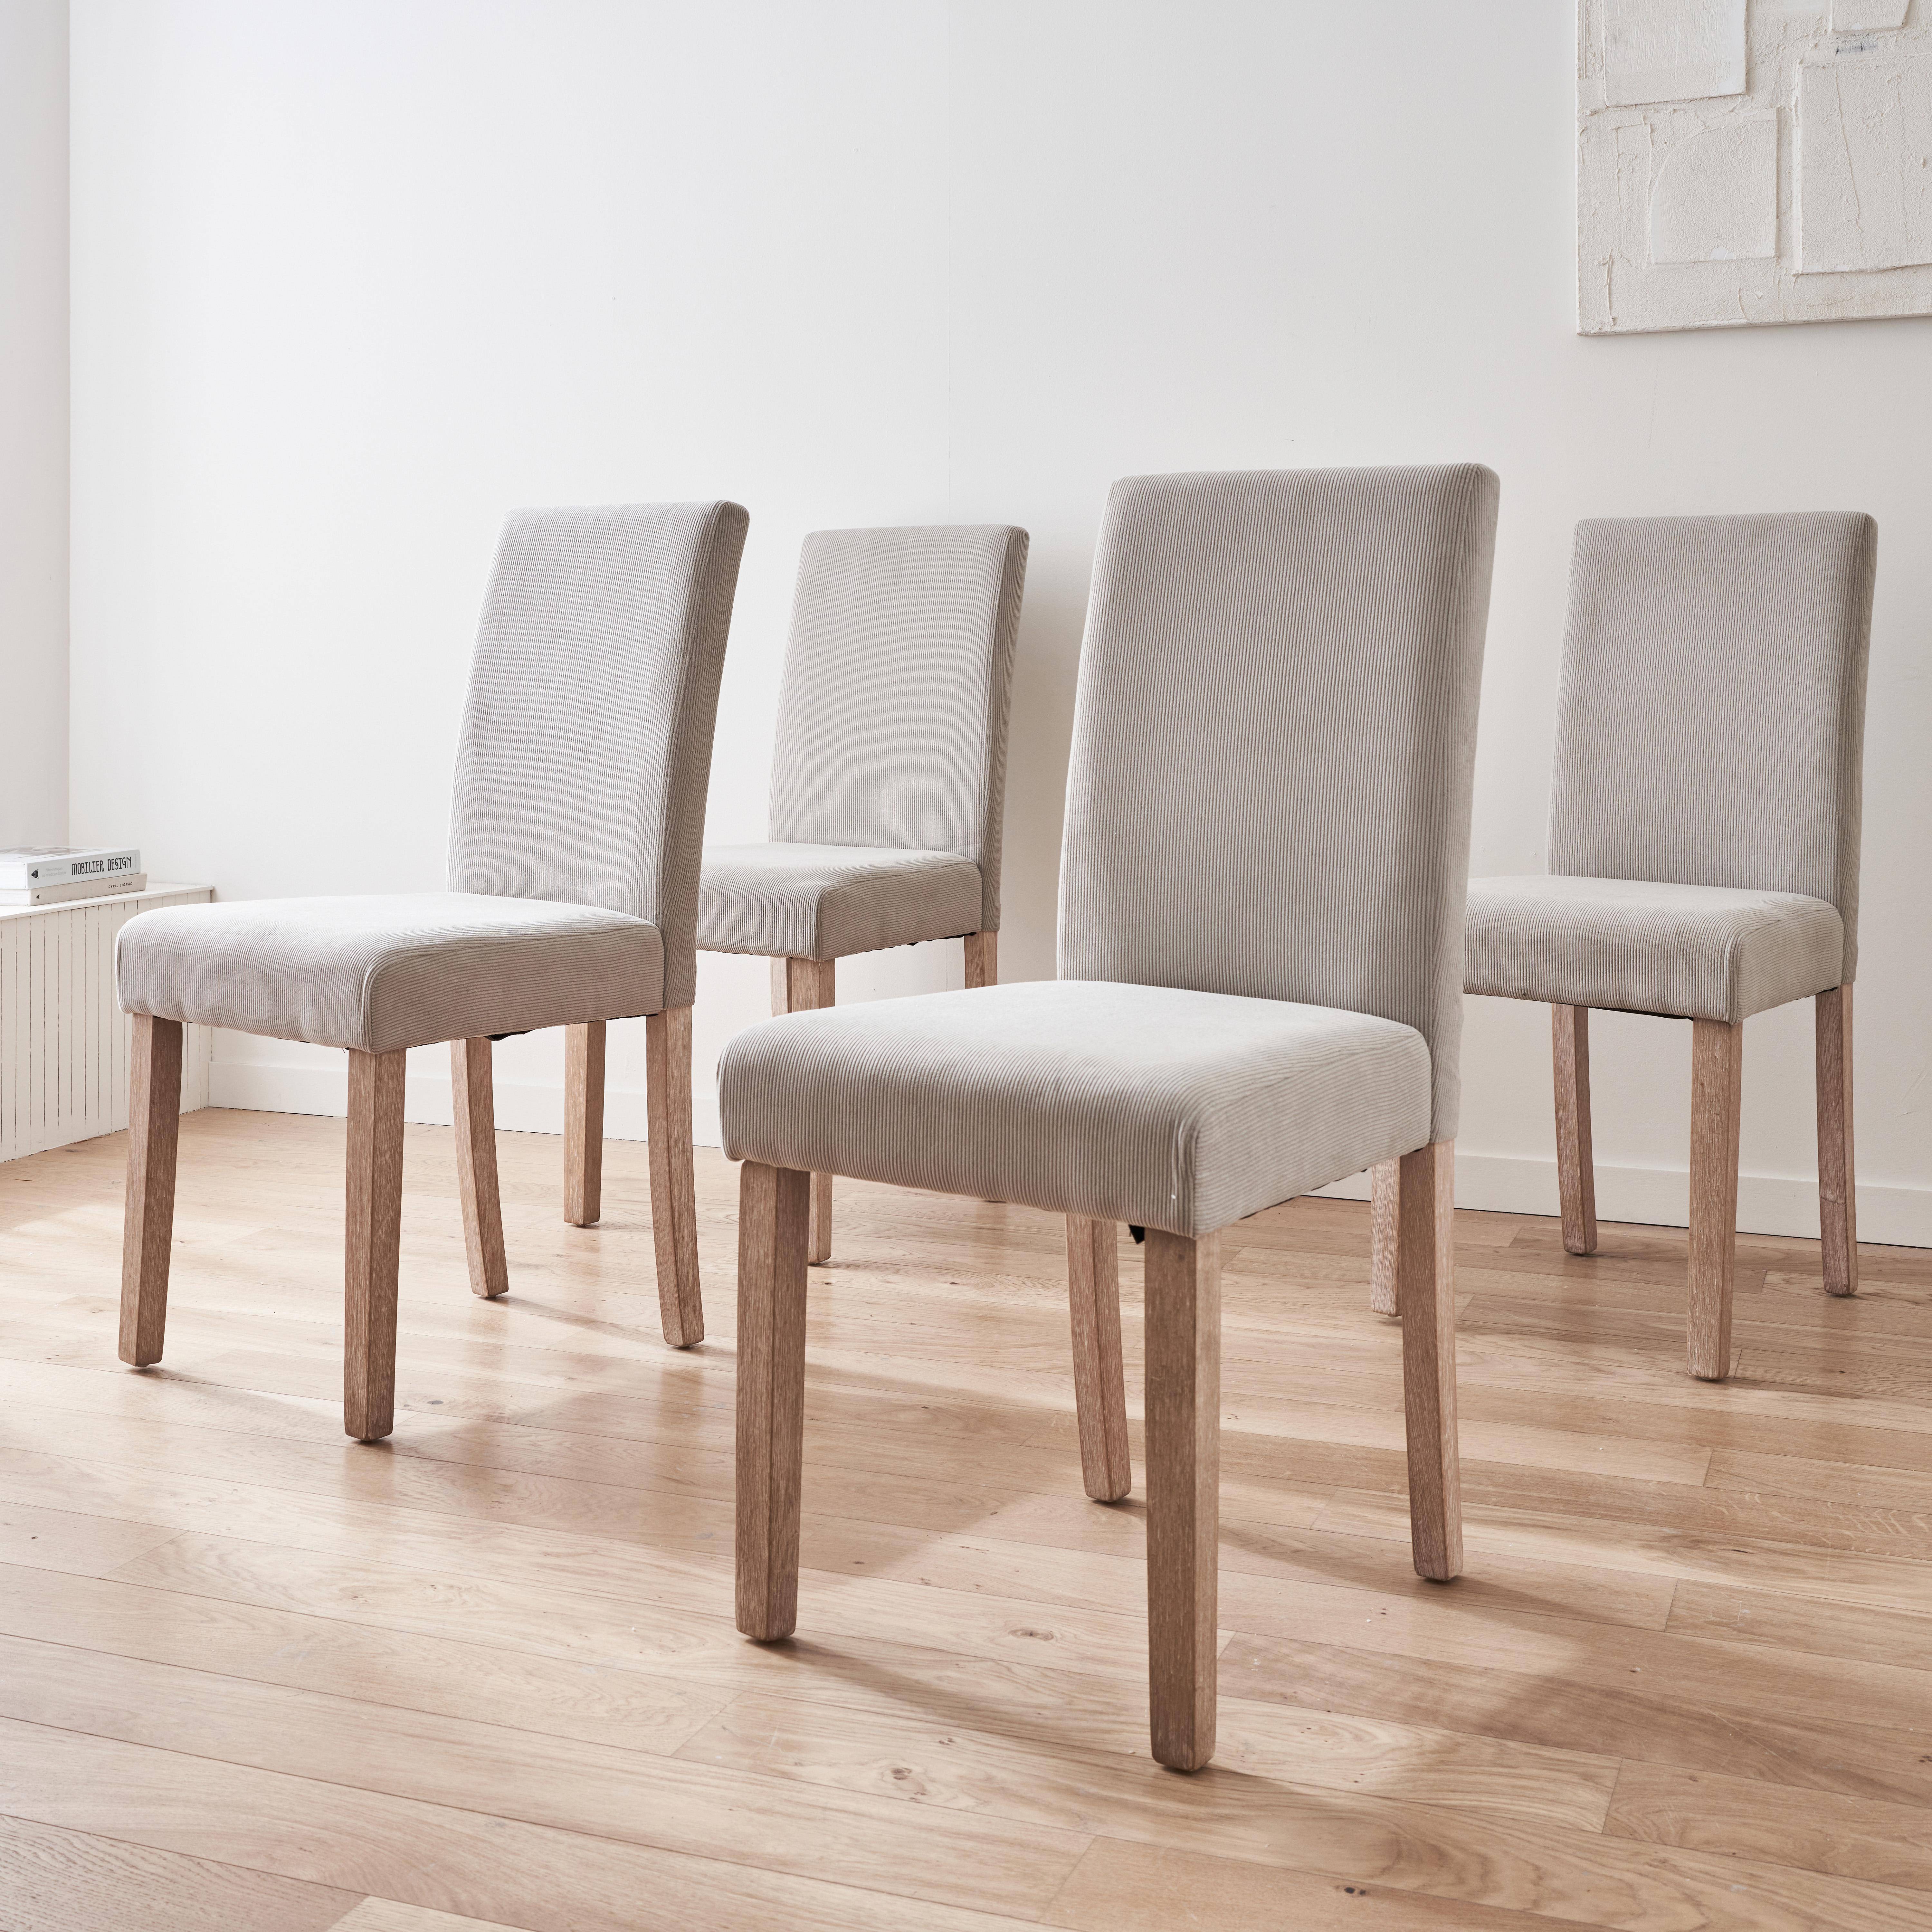 Set van 4 grijze corduroy stoelen, Rita, met witte poten van heveahout,sweeek,Photo1